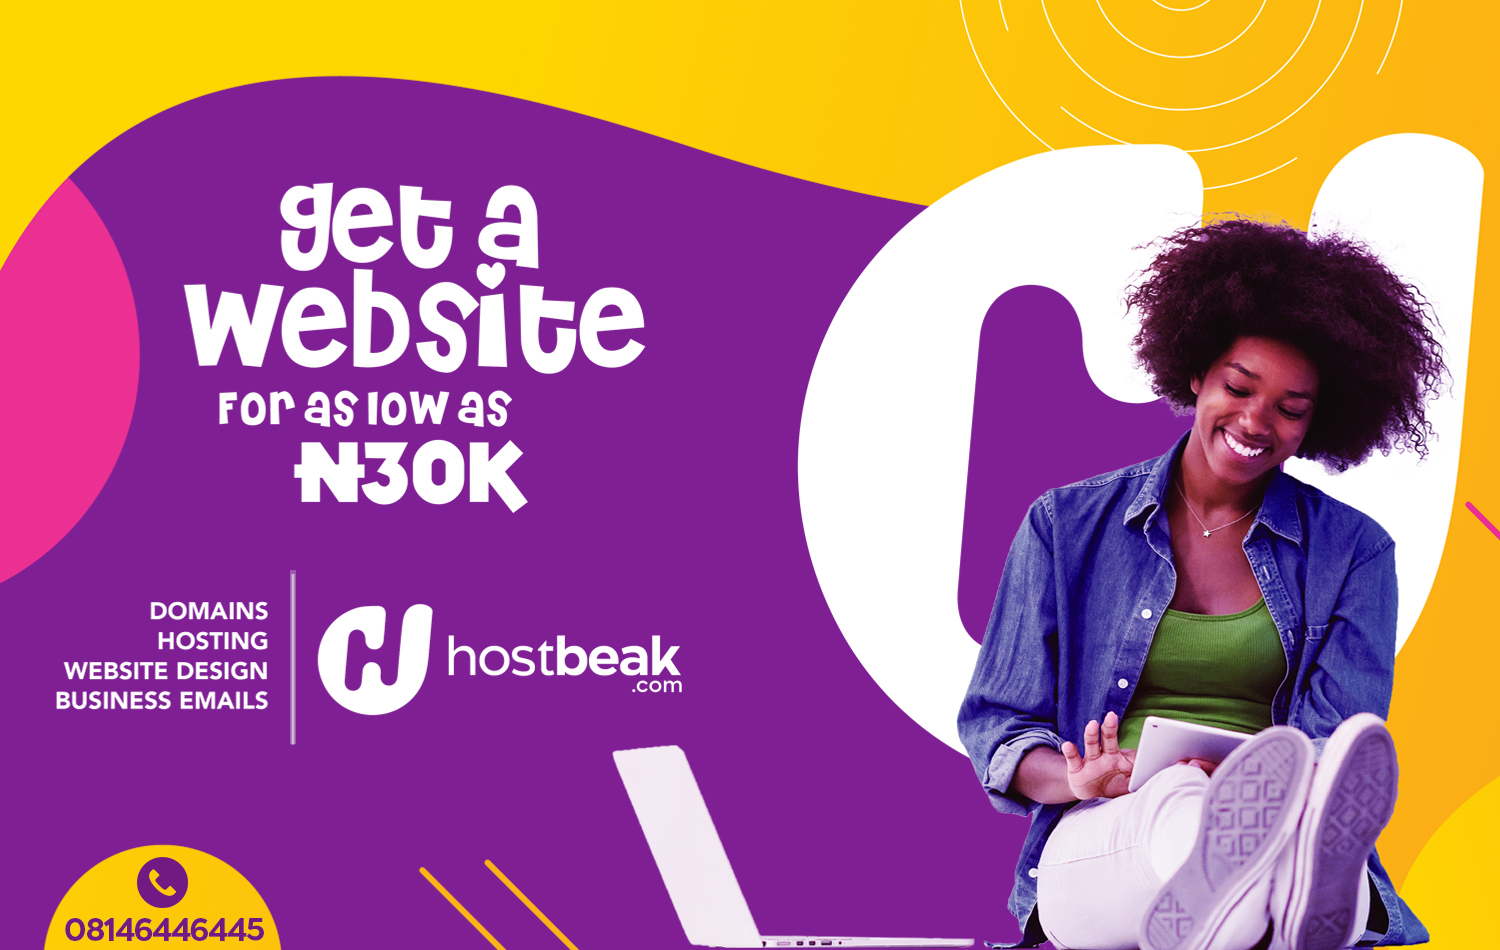 Get a website from HostBeak